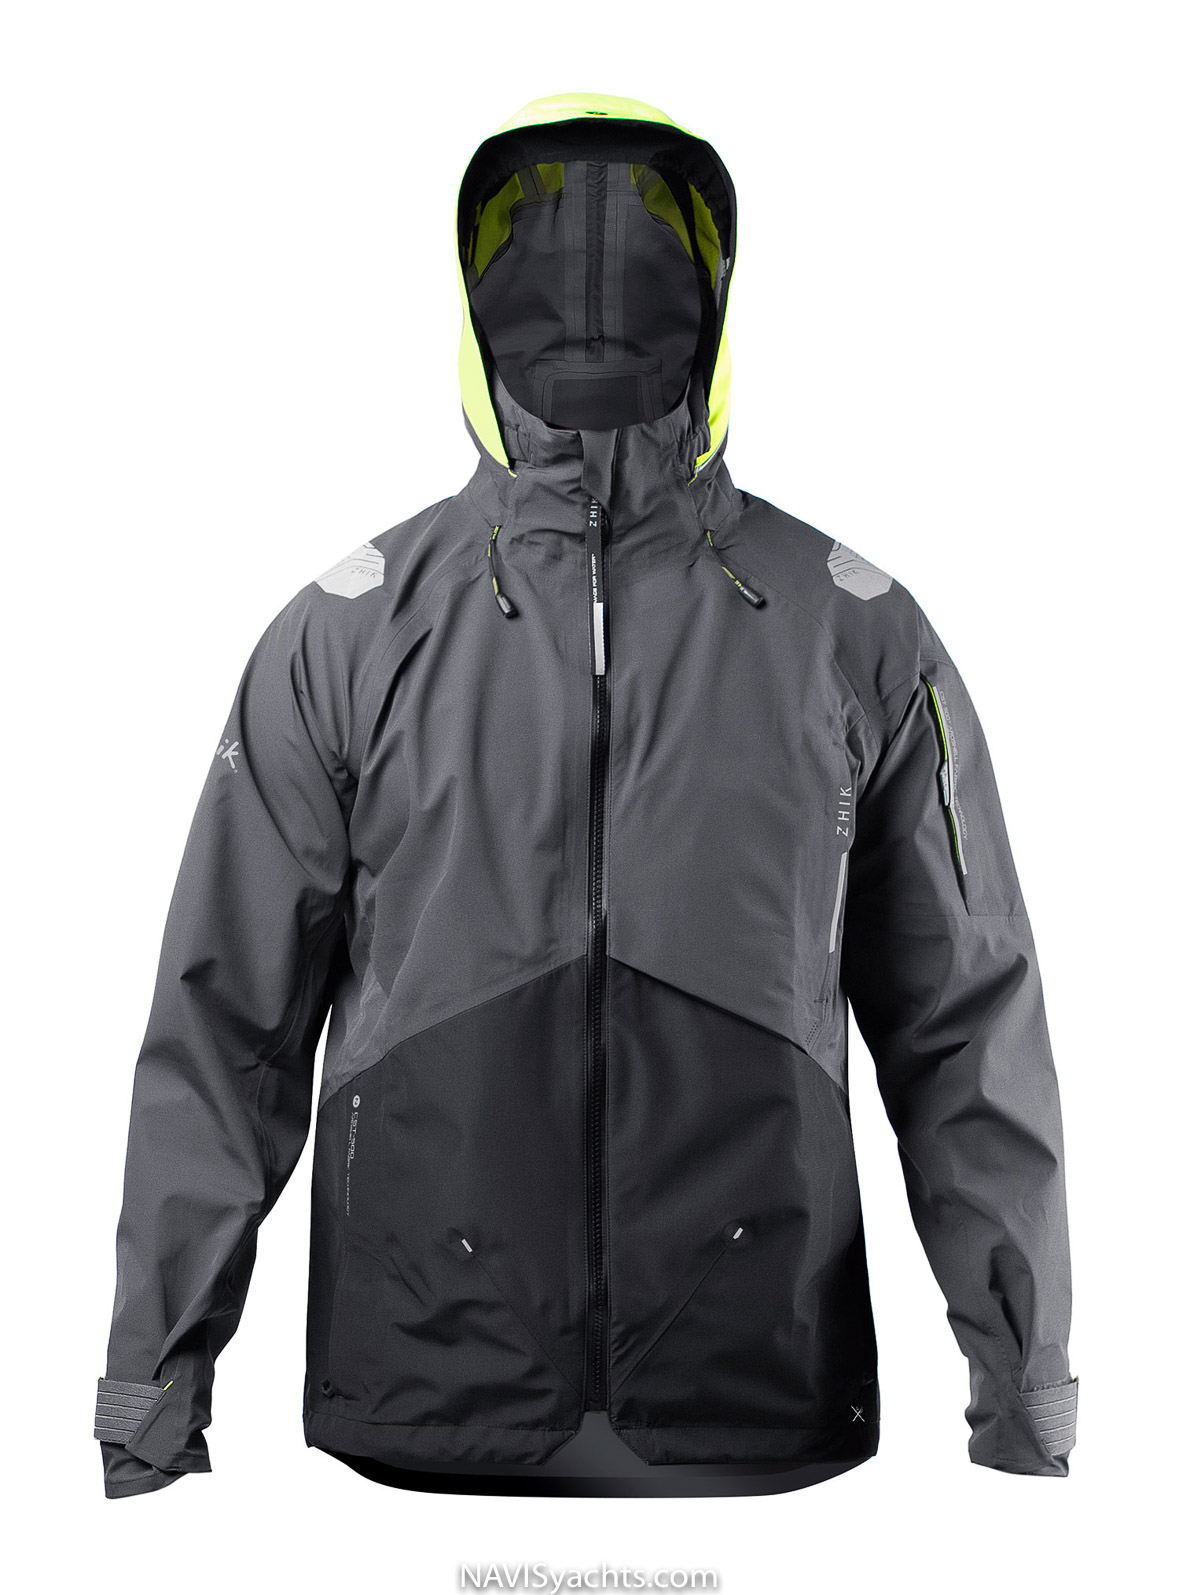 Zhik CST500 jacket-Anthracite-front